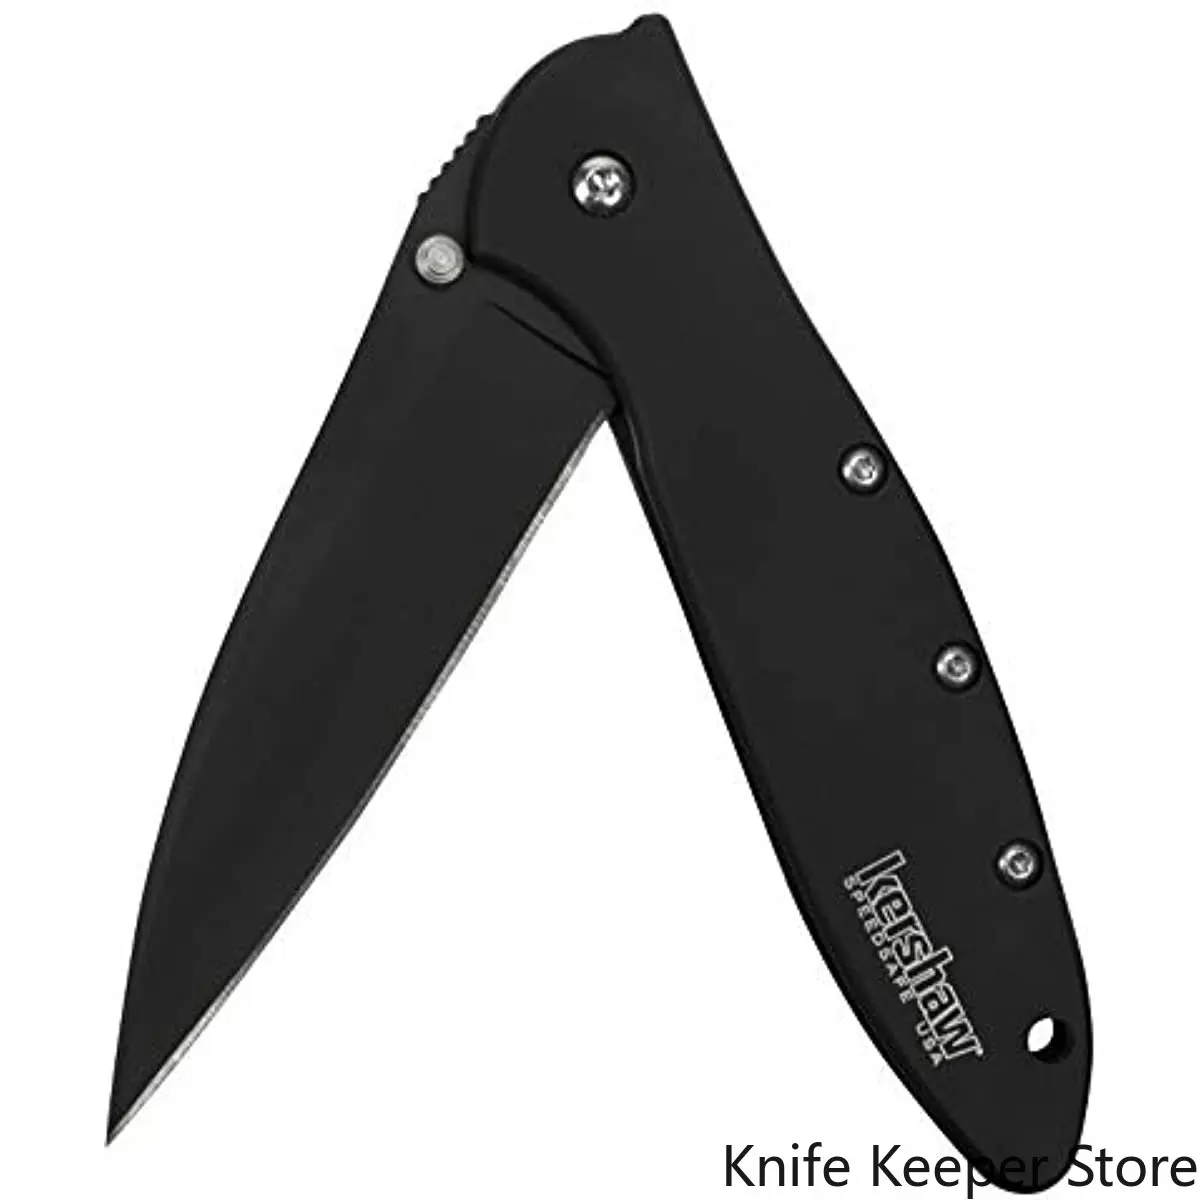 

Kershaw Leek Black Folding Knife (1660CKT) 3” 14C28N Sandvik Steel Blade 410 Stainless Steel Handle, Both DLC-Coated Liner Lock